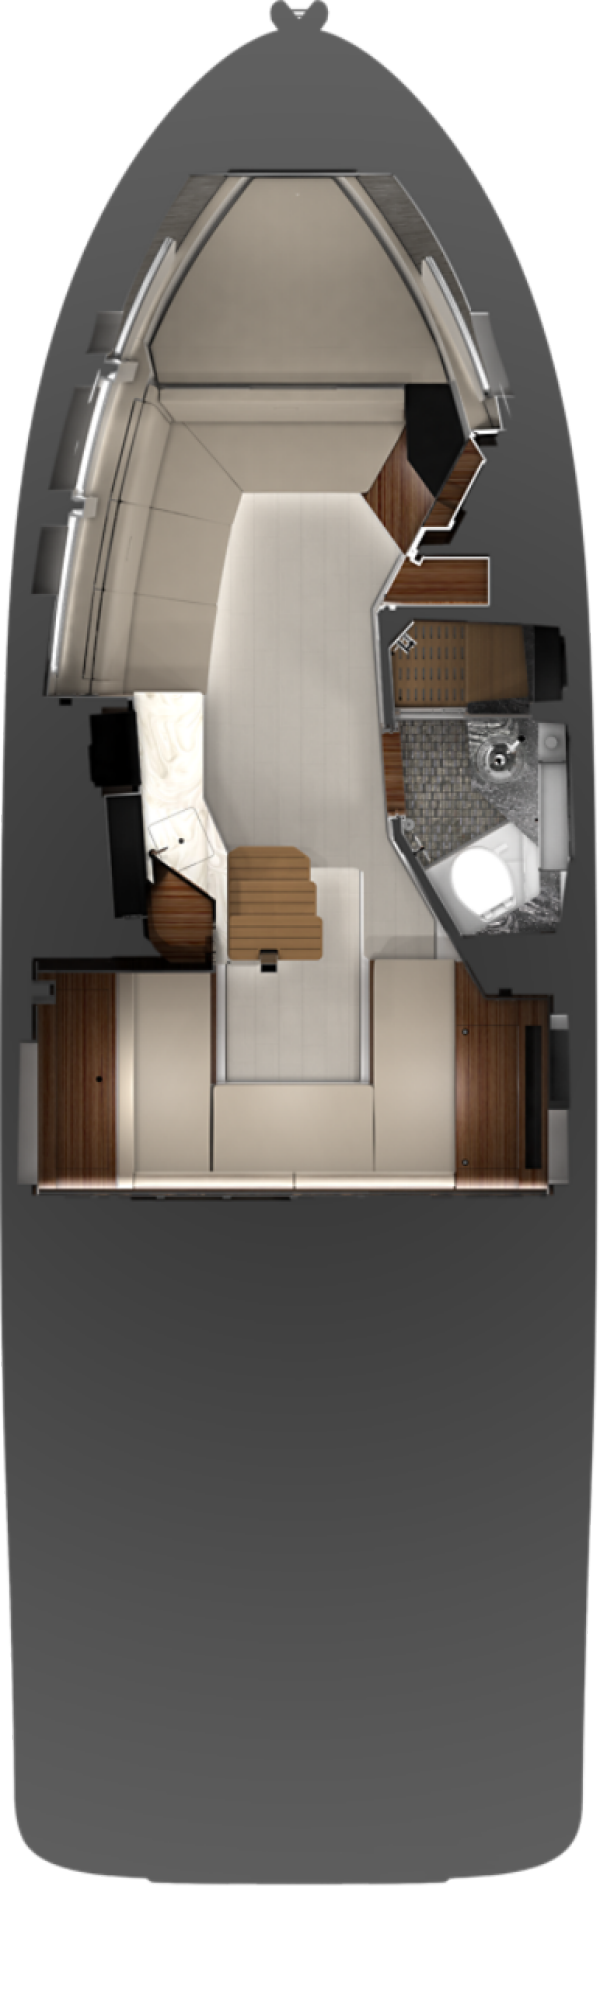 Sundancer 370 Cabin floor plan